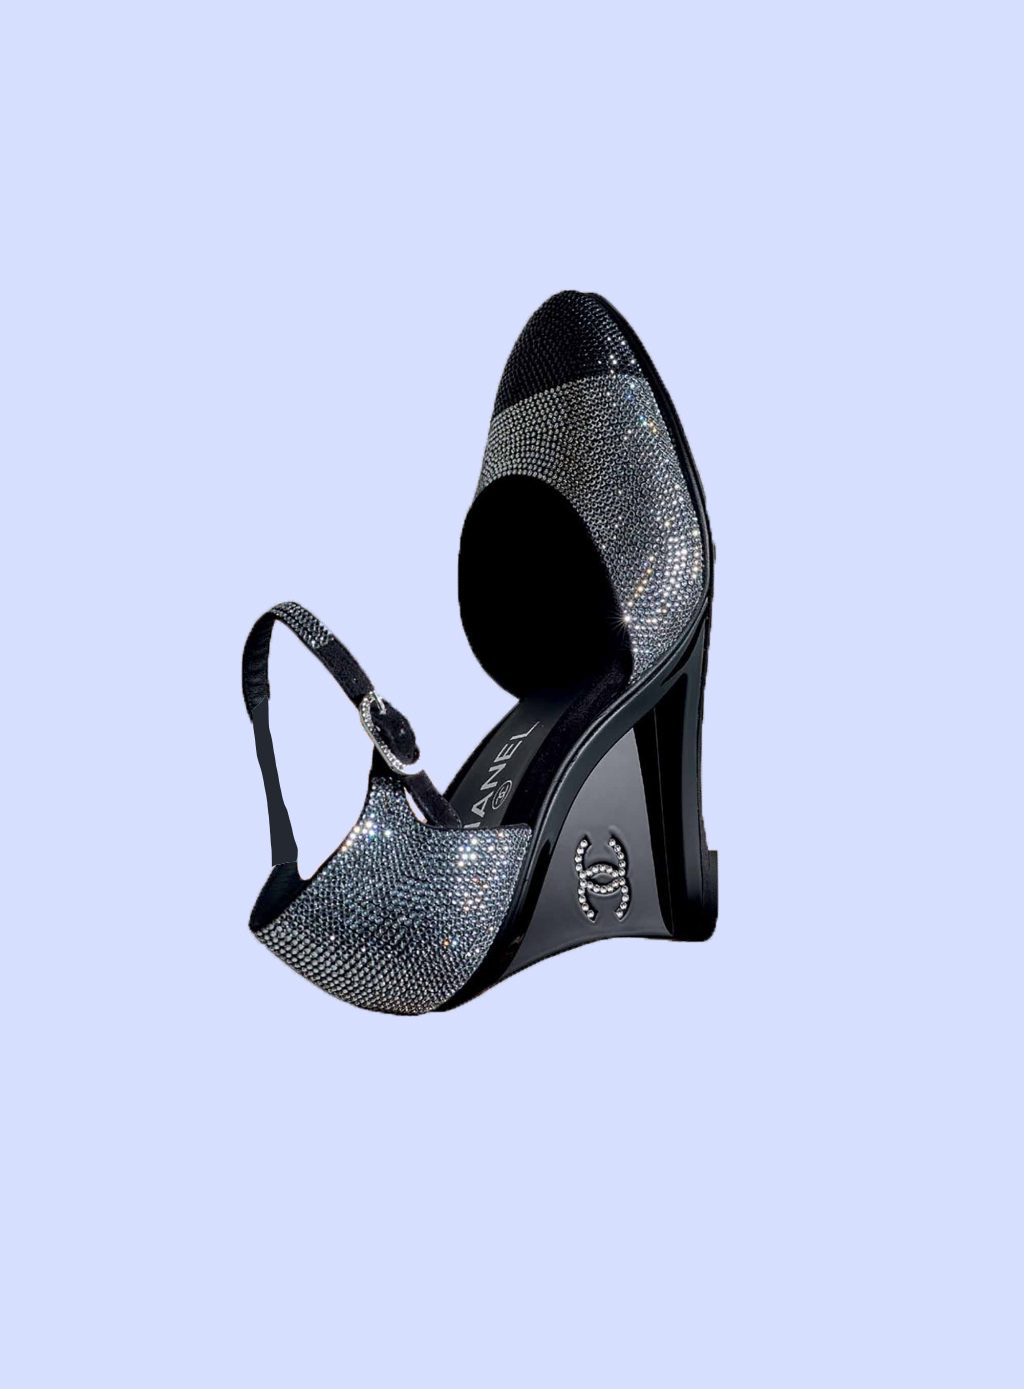 Mẫu giày lấp lánh Chanel Two-tone Crystal là xu hướng giày siêu hot cho mùa hè 2021.